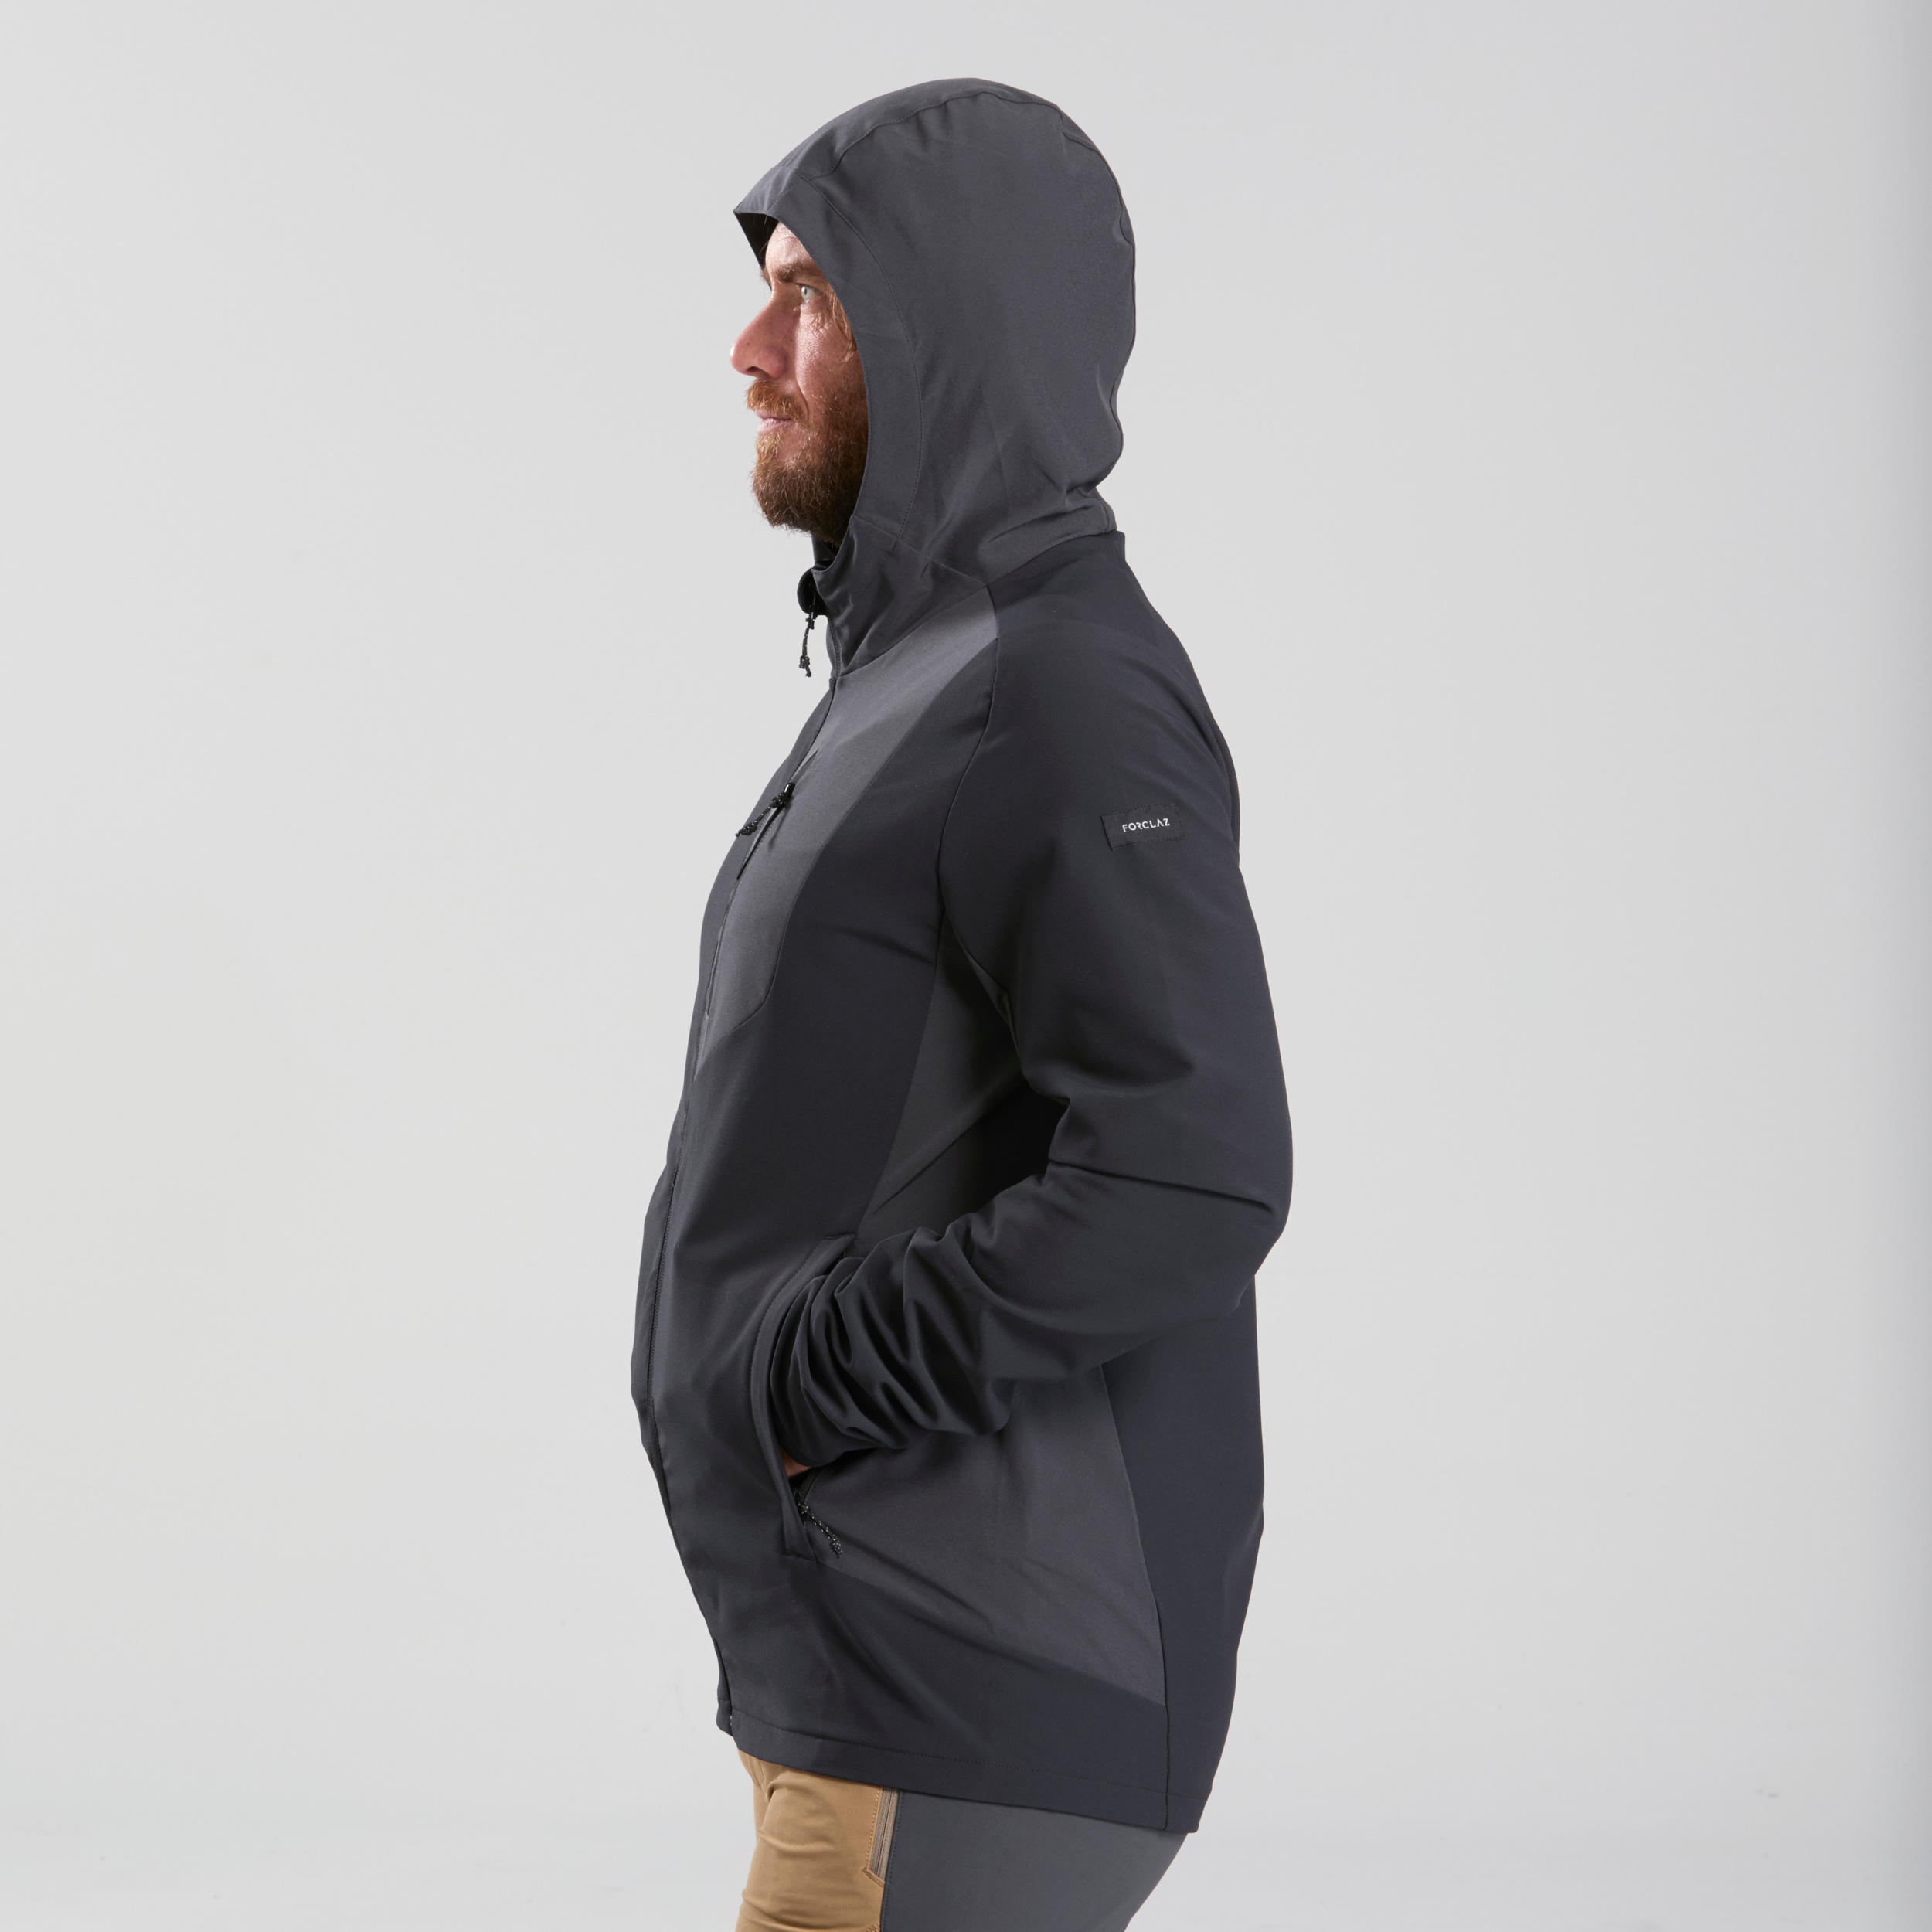 Men's Softshell Hiking Jacket - MT 900 Black - Black, Carbon grey